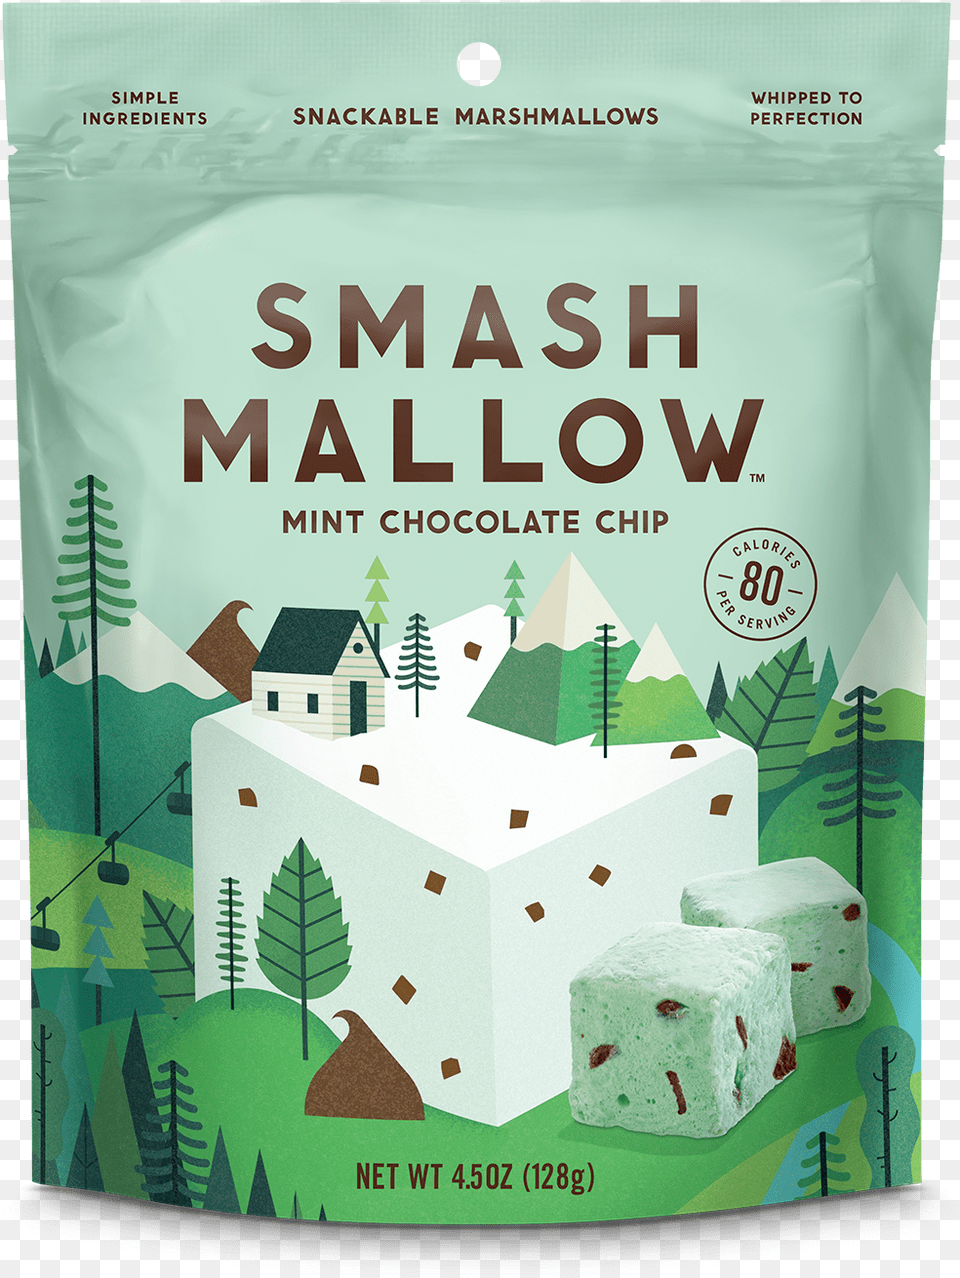 New Smashmallow Brand Smashmallow Mint Chocolate Chip, Advertisement, Powder Png